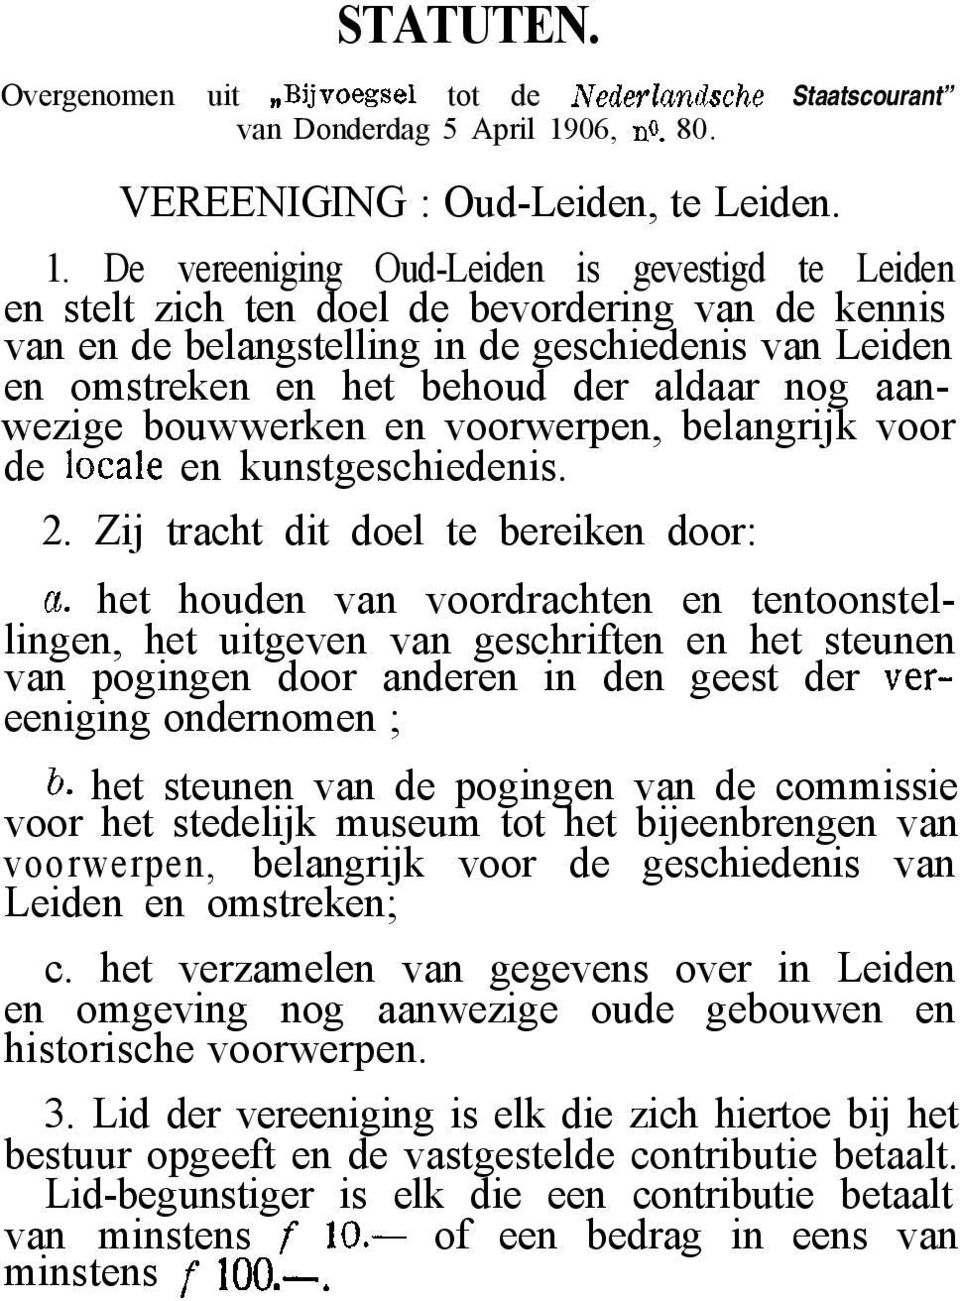 De vereeniging Oud-Leiden is gevestigd te Leiden en stelt zich ten doel de bevordering van de kennis van en de belangstelling in de geschiedenis van Leiden en omstreken en het behoud der aldaar nog